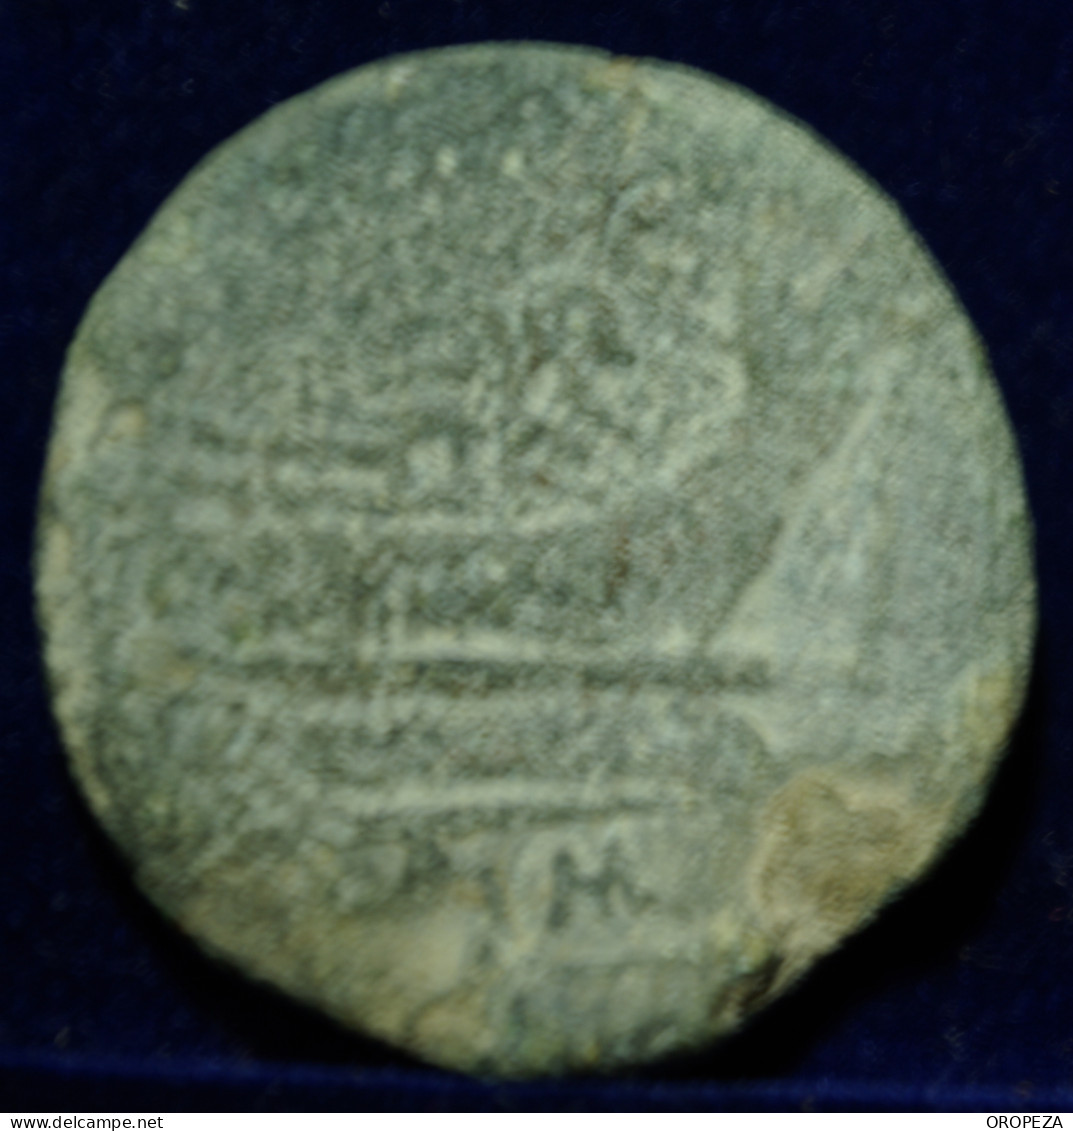 21 -   BONITO  AS  DE  JANO - SERIE SIMBOLOS -  CASCO - MBC - Republic (280 BC To 27 BC)